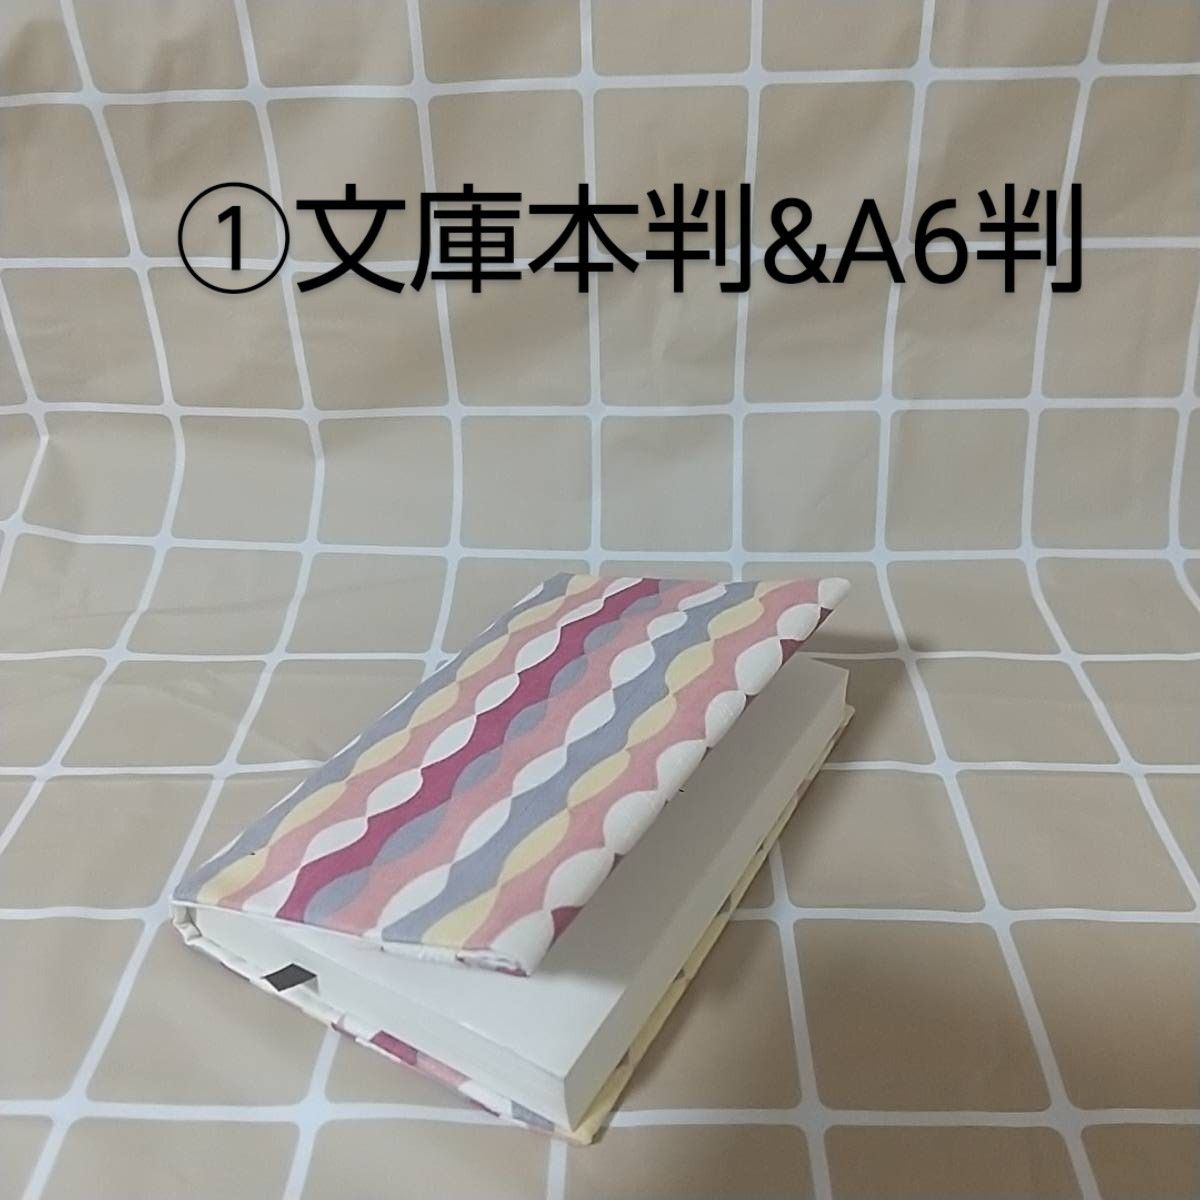 [新品]BK42 ブックカバー①文庫本判&A6判 